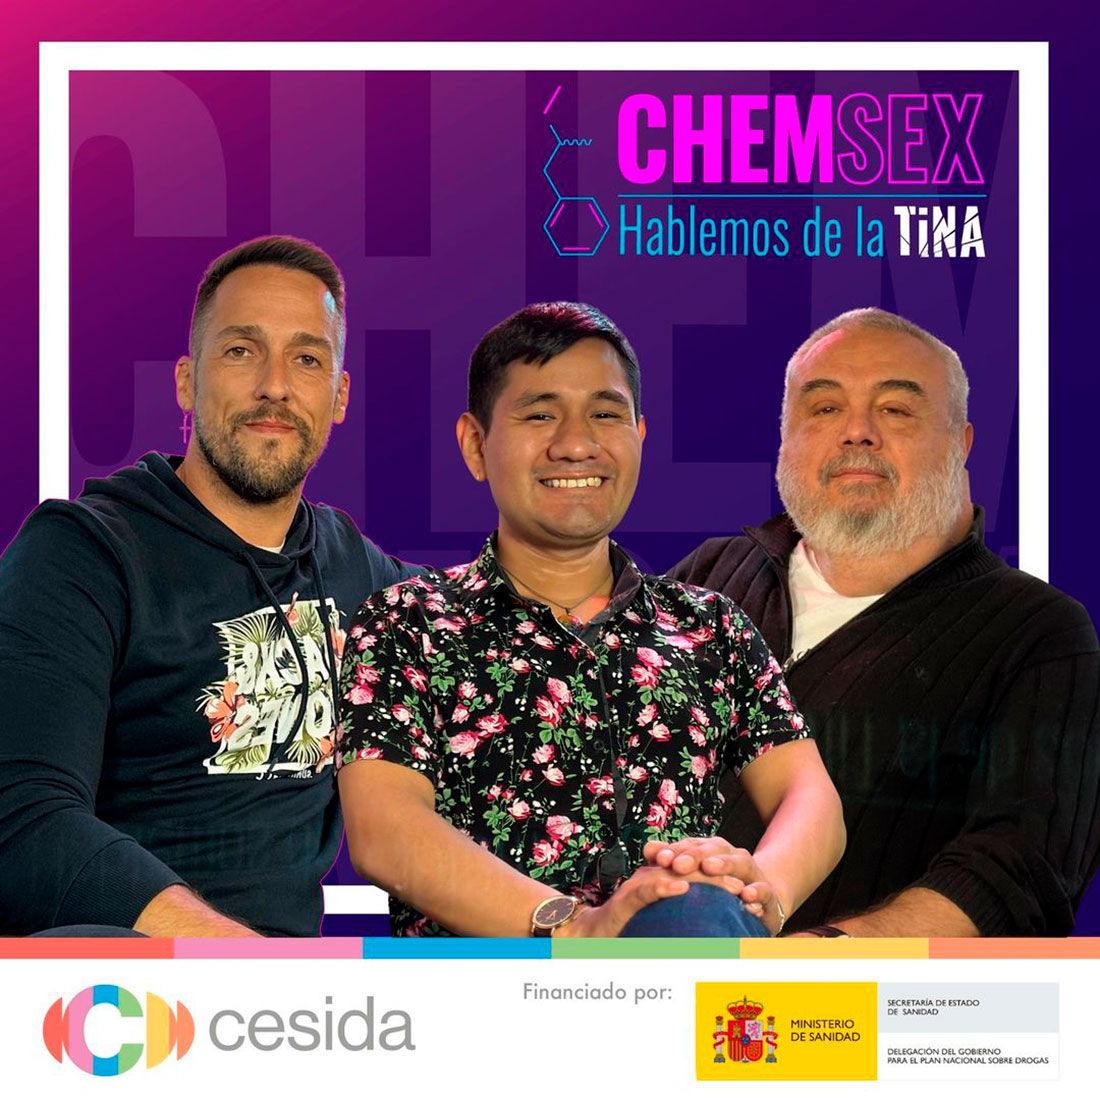 'Chemsex/Hablemos de la Tina' es una necesaria campaña de Cesida.